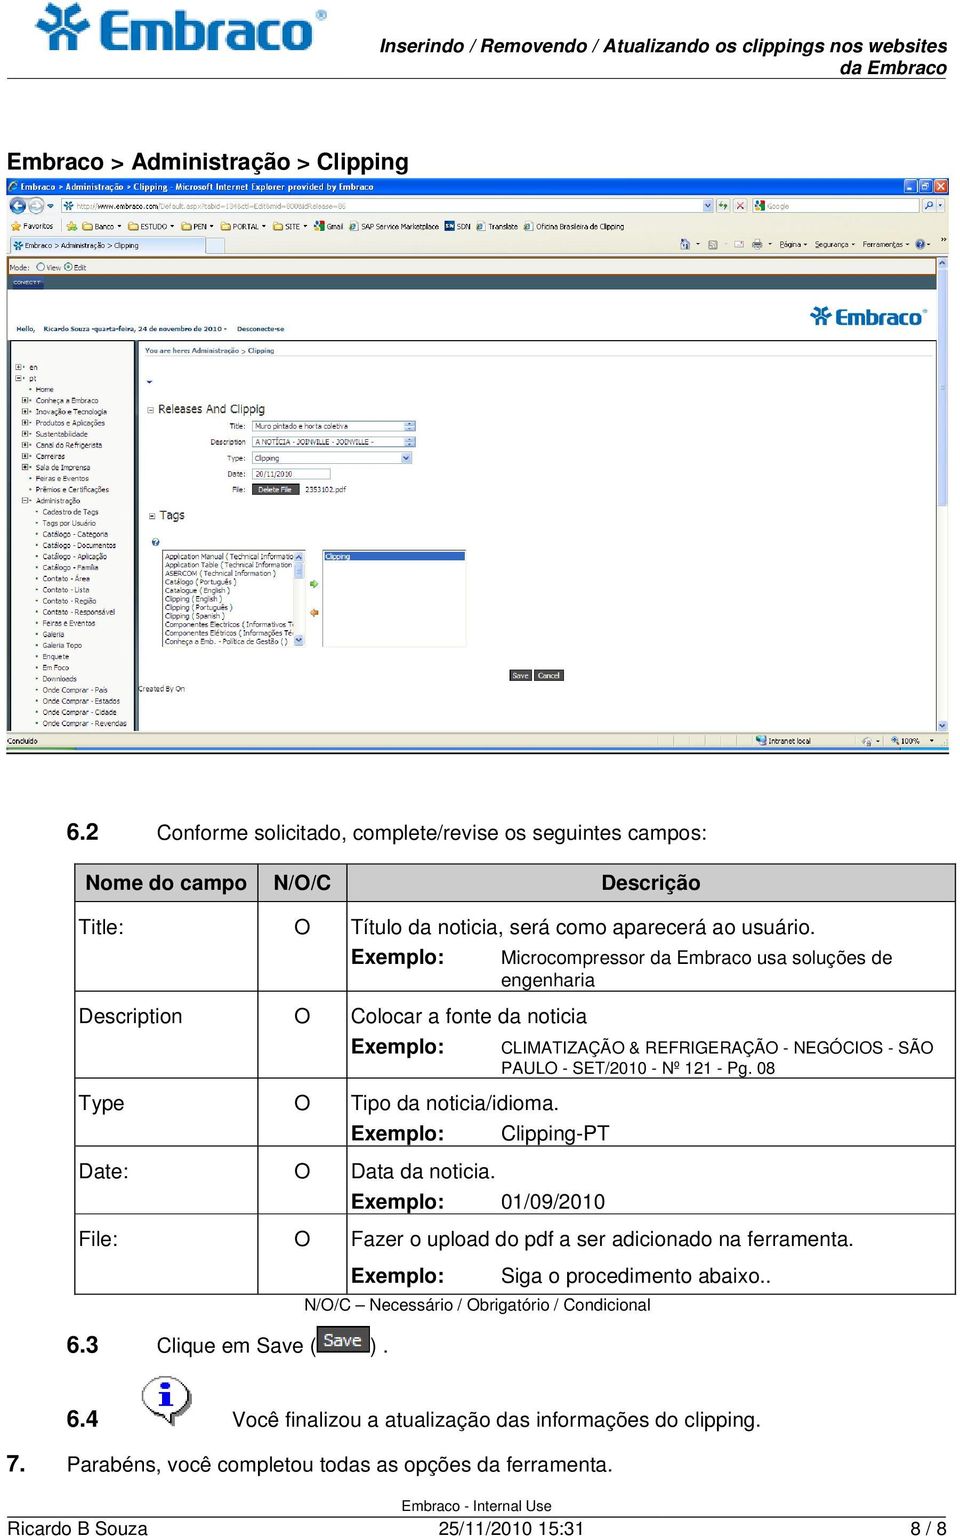 CLIMATIZAÇÃO & REFRIGERAÇÃO - NEGÓCIOS - SÃO PAULO - SET/2010 - Nº 121 - Pg. 08 Clipping-PT 01/09/2010 File: O Fazer o upload do pdf a ser adicionado na ferramenta. 6.